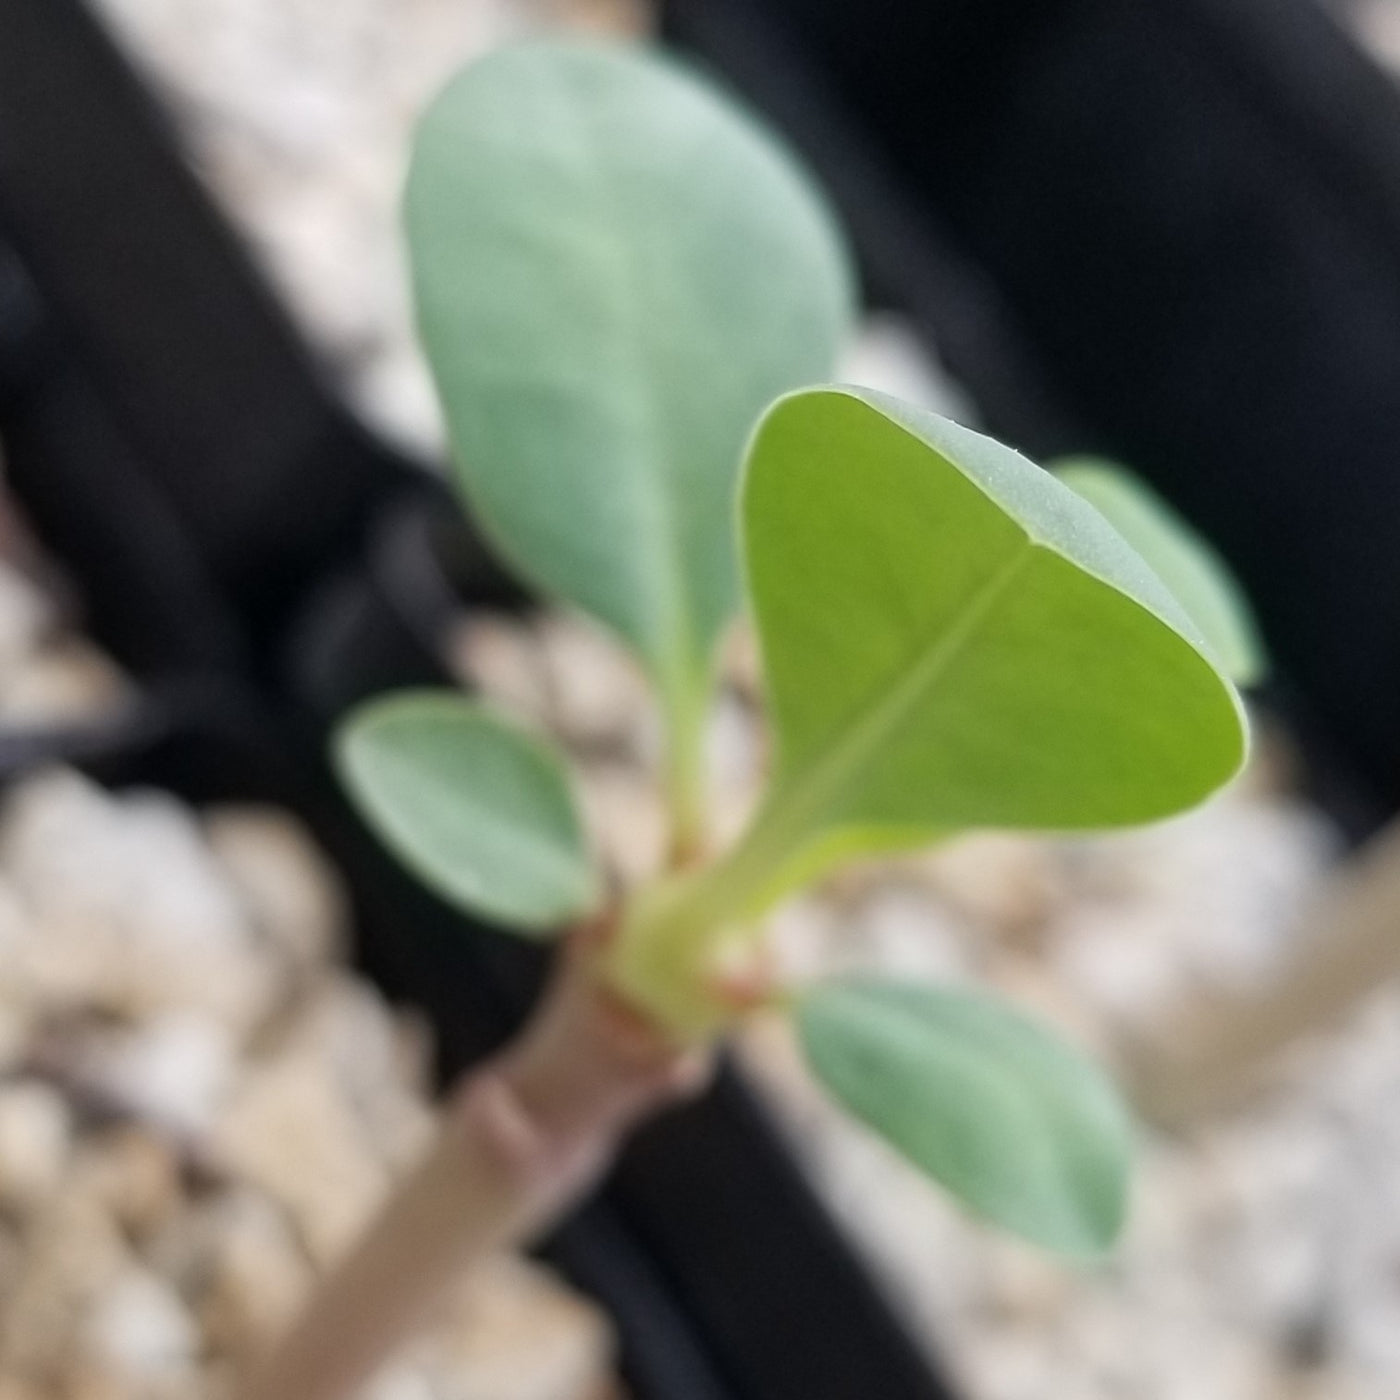 Euphorbia leistneri